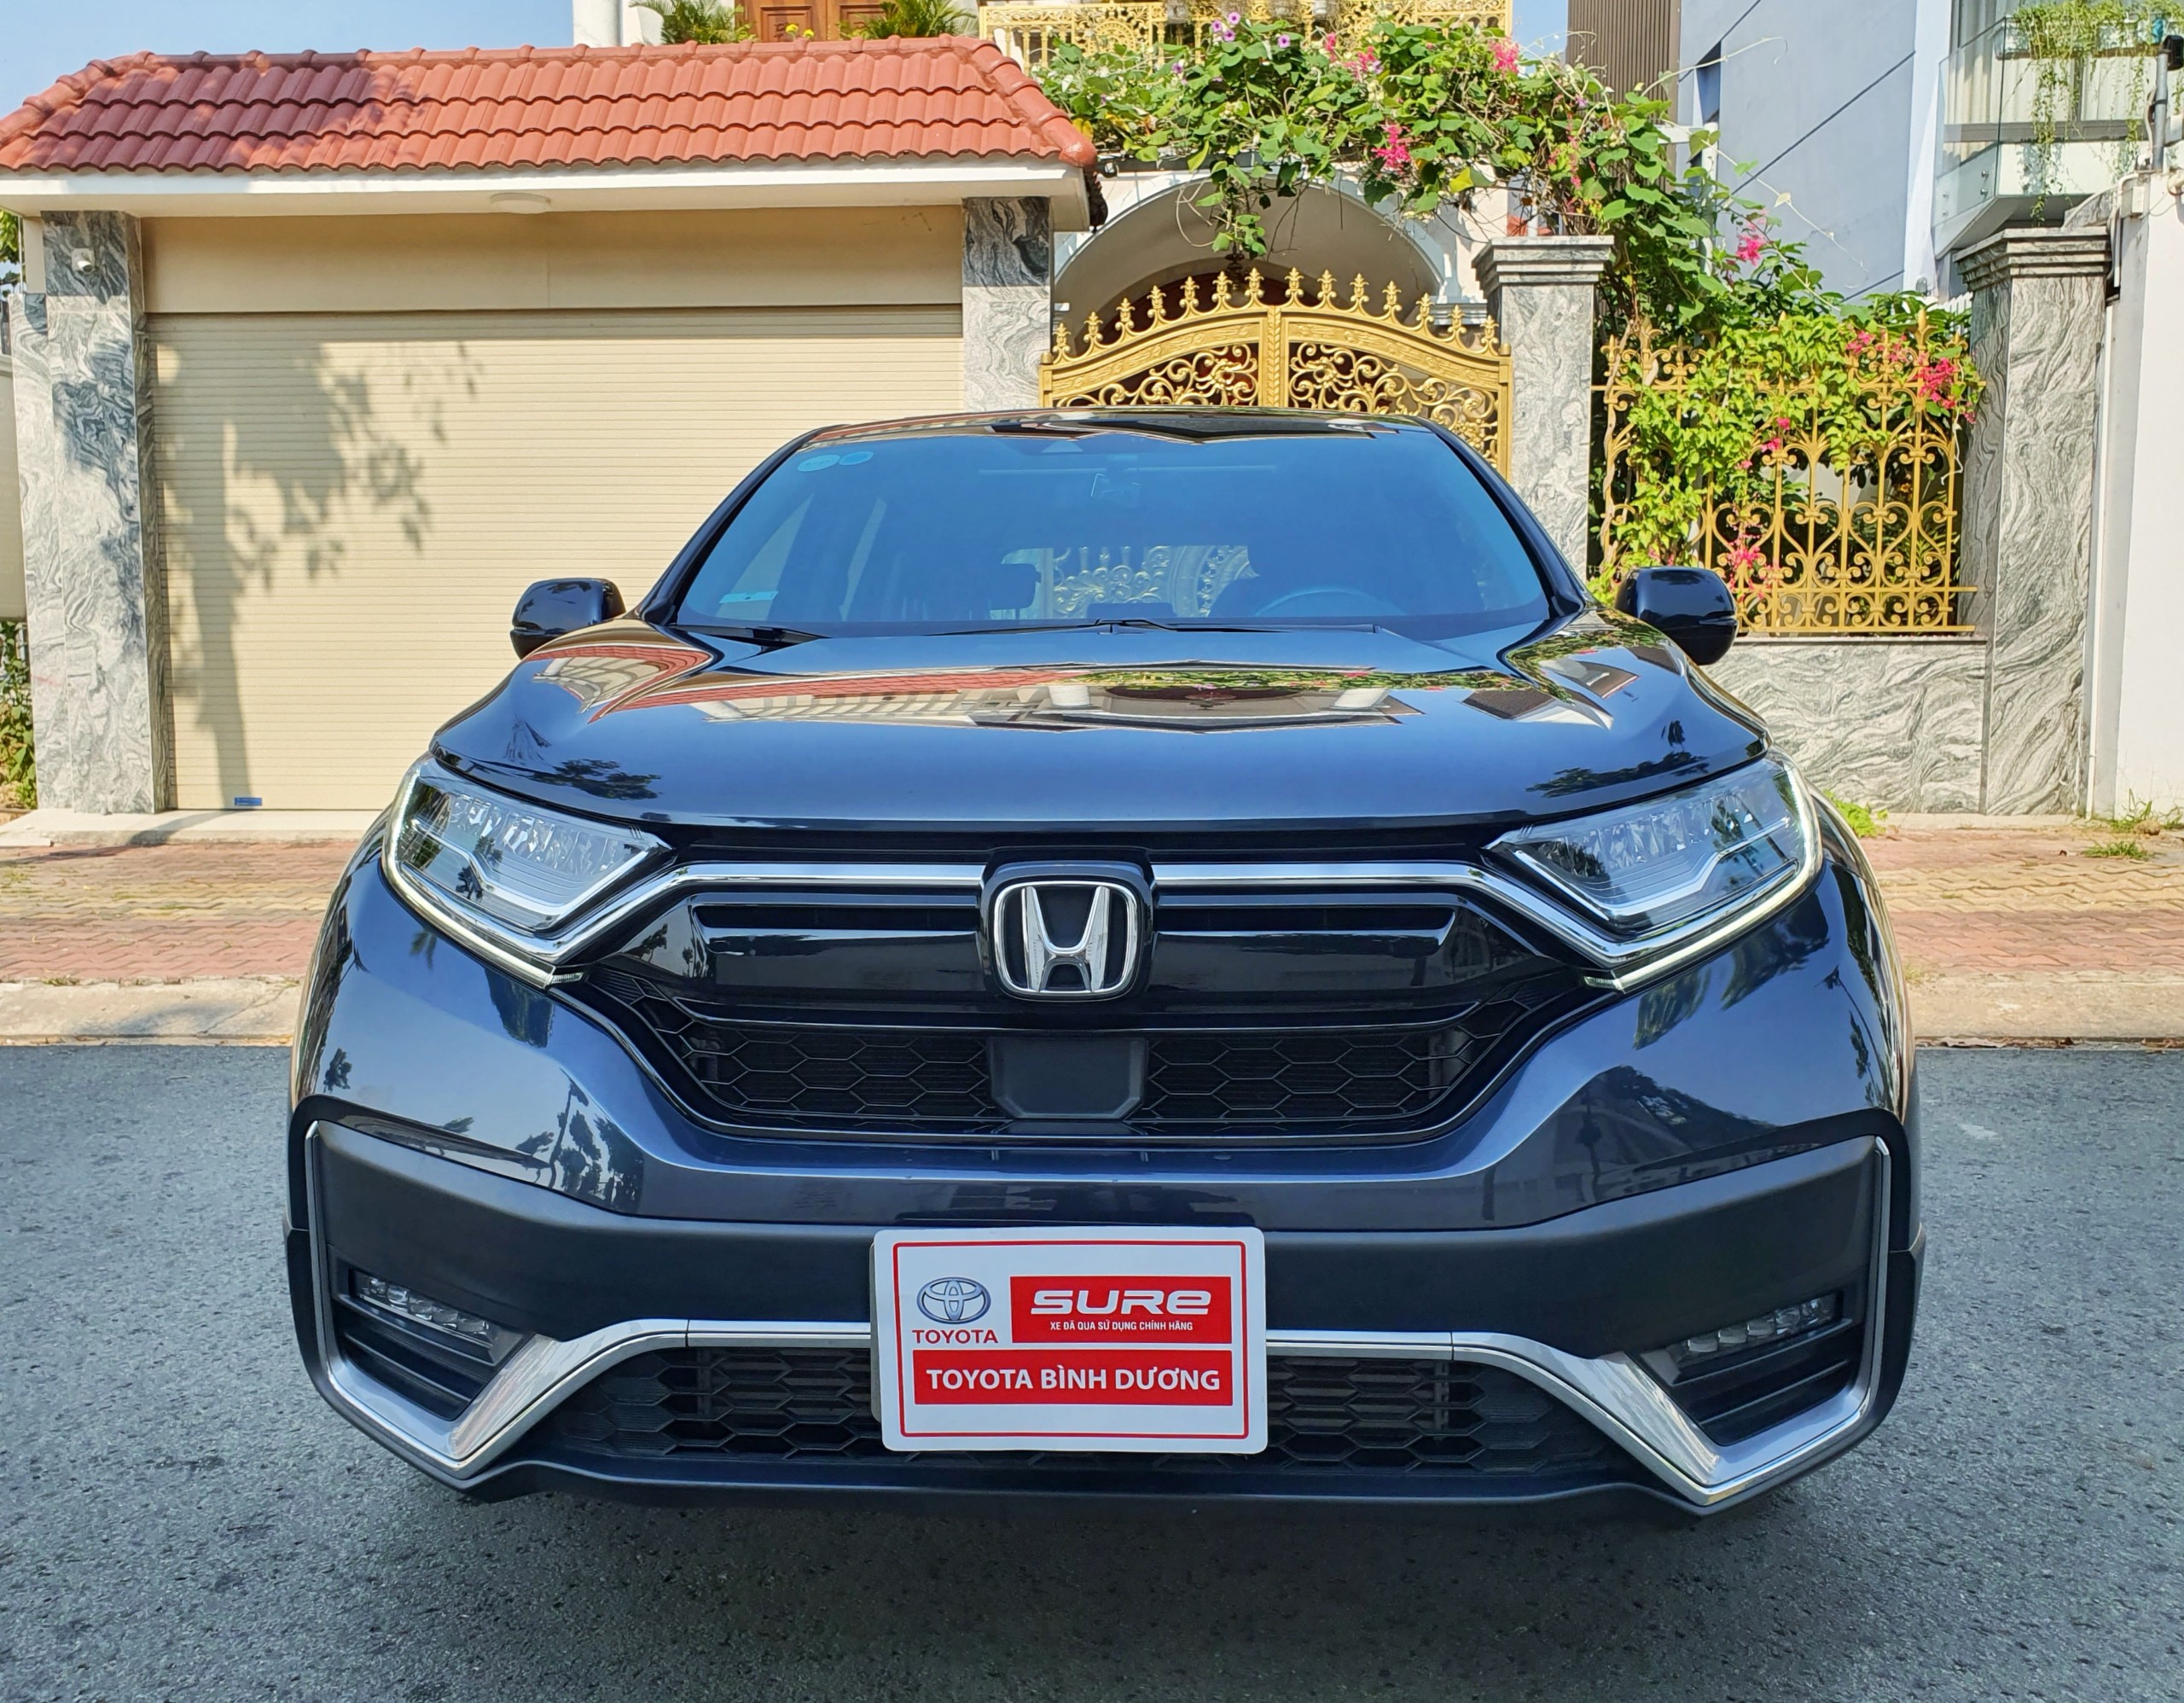 Honda CRV 2020 Phiên Bản Đặc Biệt